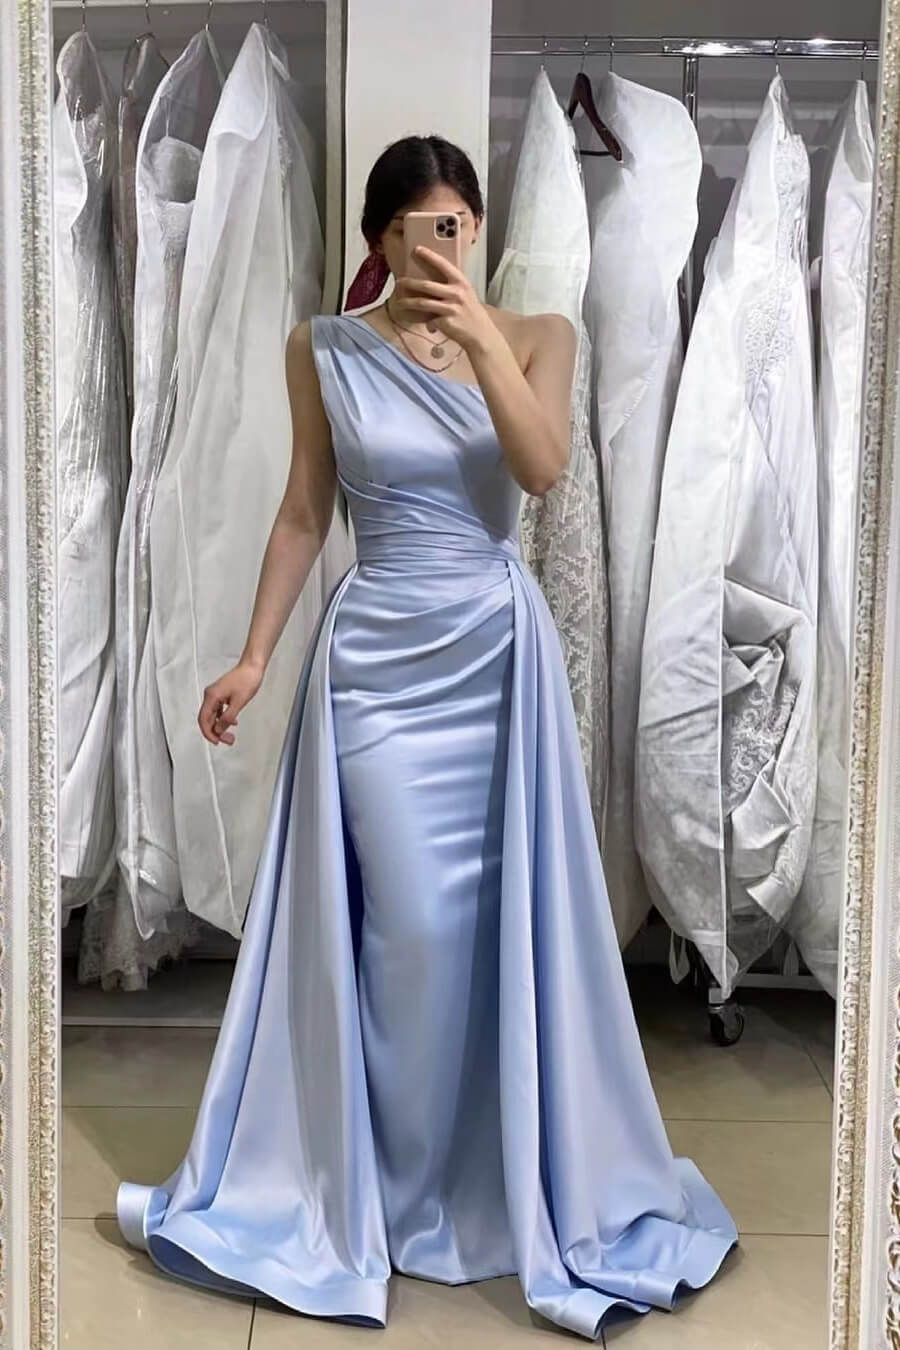 Oknass Light Blue Sleeveless Mermaid One-Shoulder Long Prom Dress With Detachable Skirt